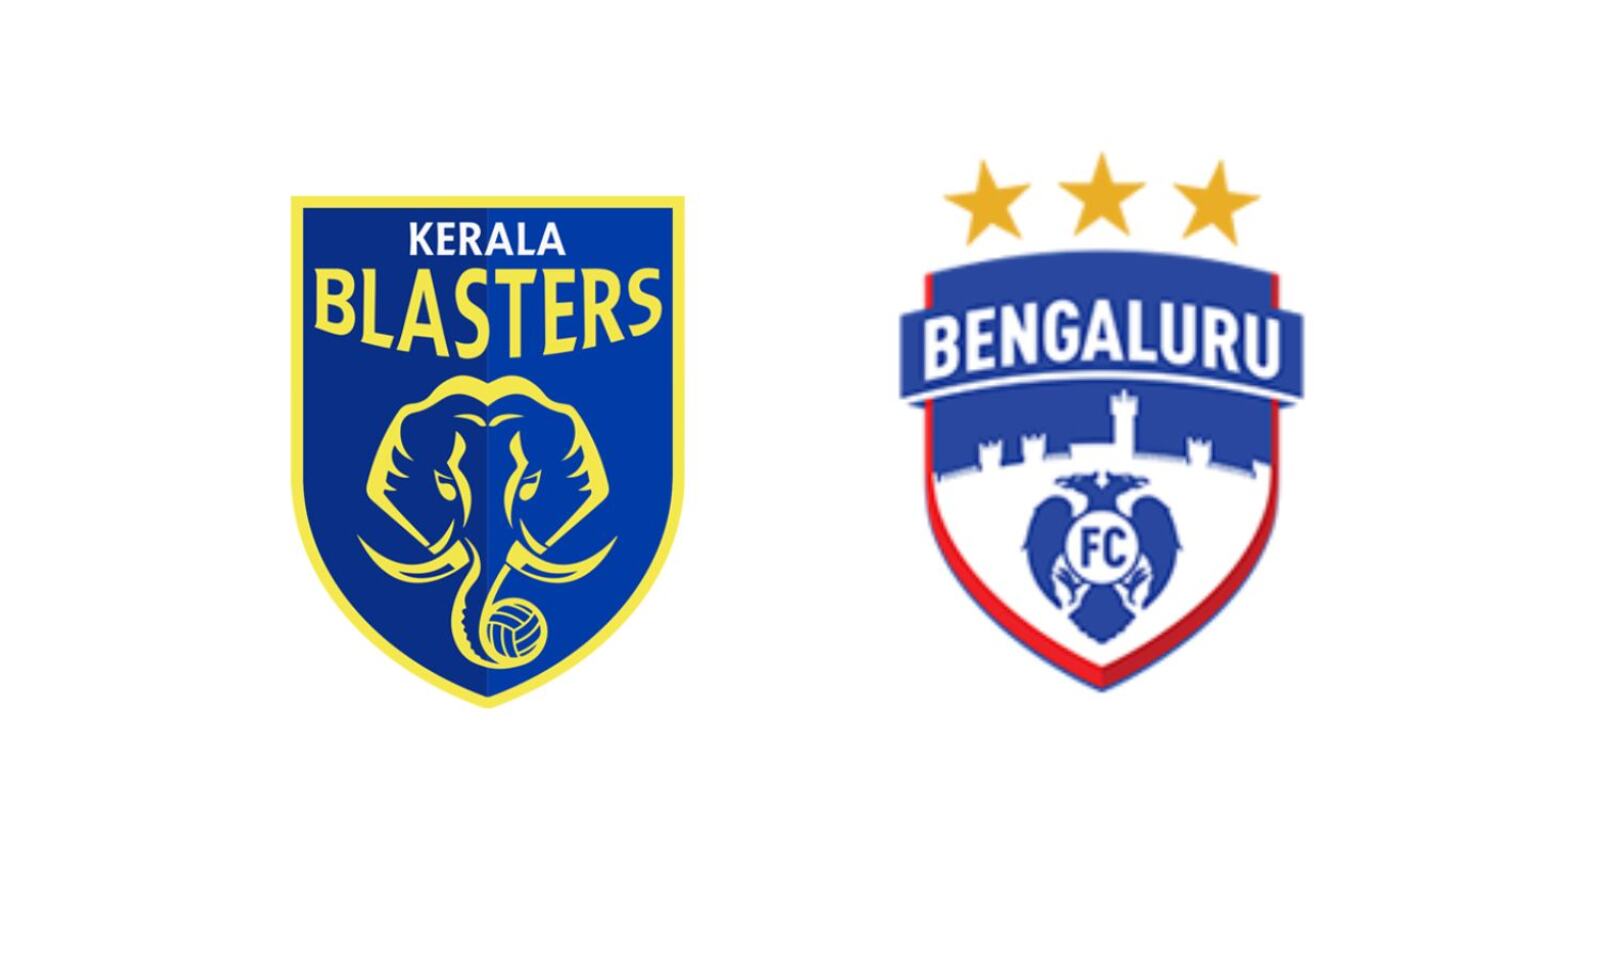 Kerala blasters mobile HD wallpapers | Pxfuel